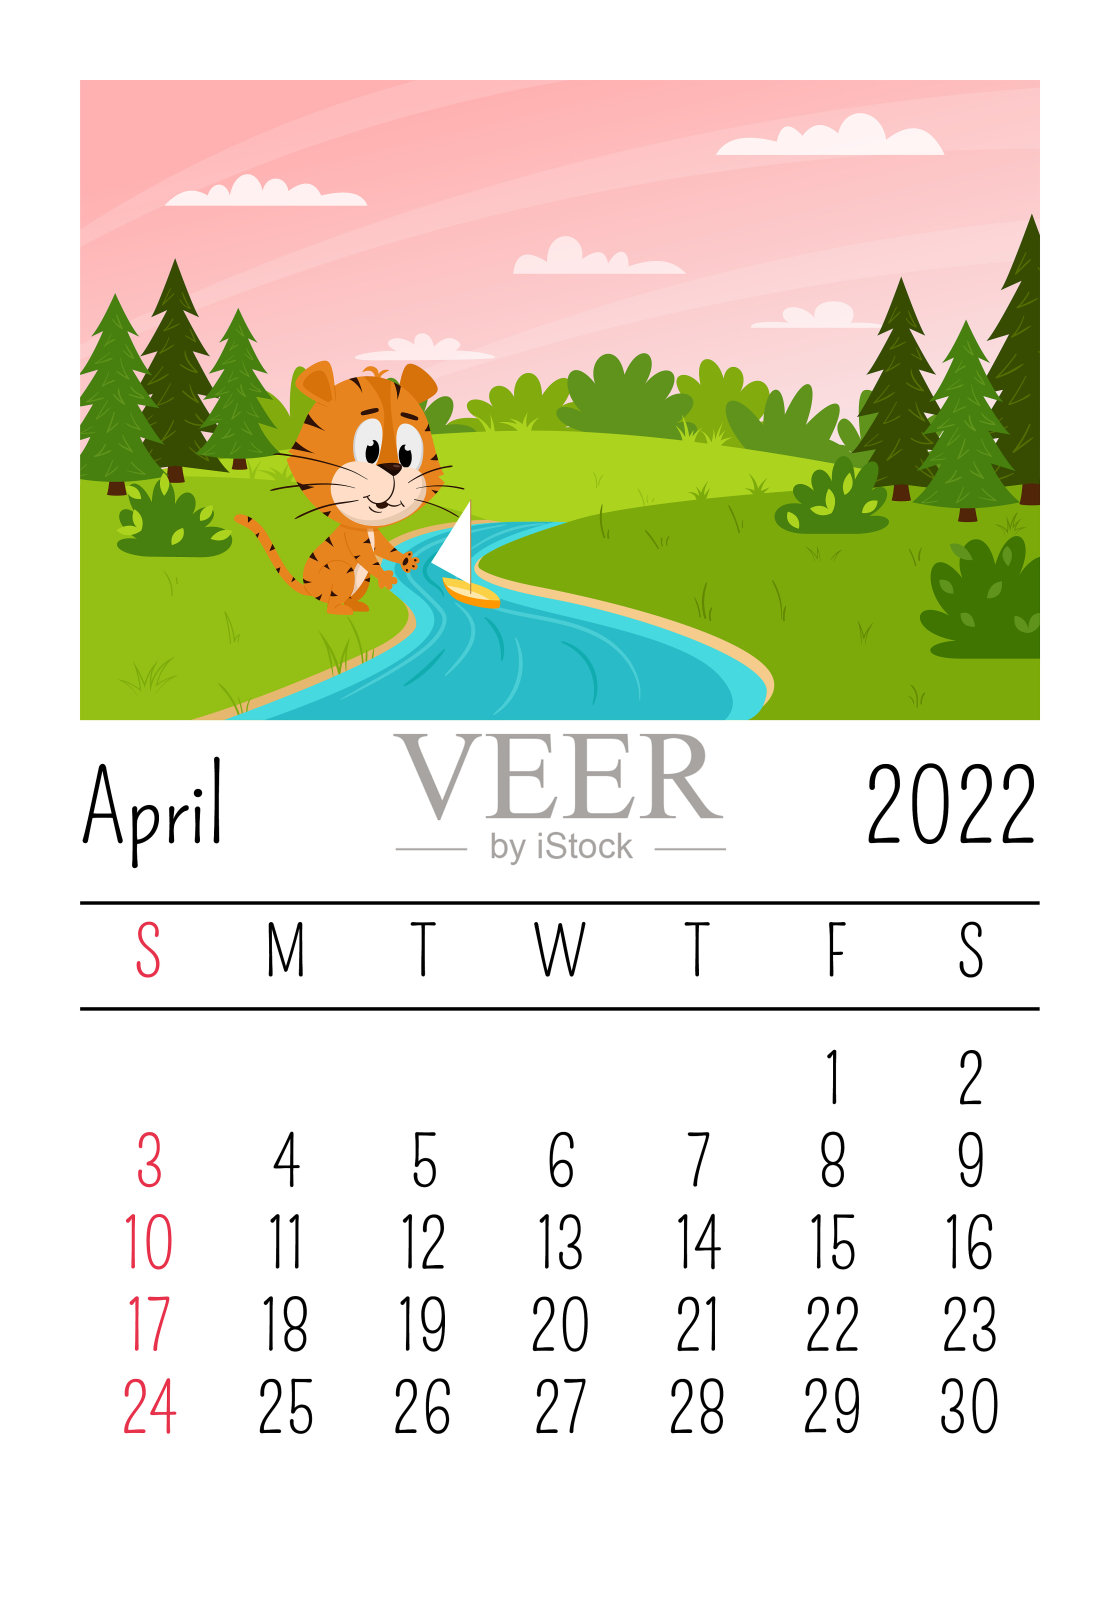 设计模板。2022年4月的日历。一只可爱的卡通老虎在森林的小溪中划船。春天的风景。一年的象征。动物的性格。儿童彩色矢量插图。设计模板素材